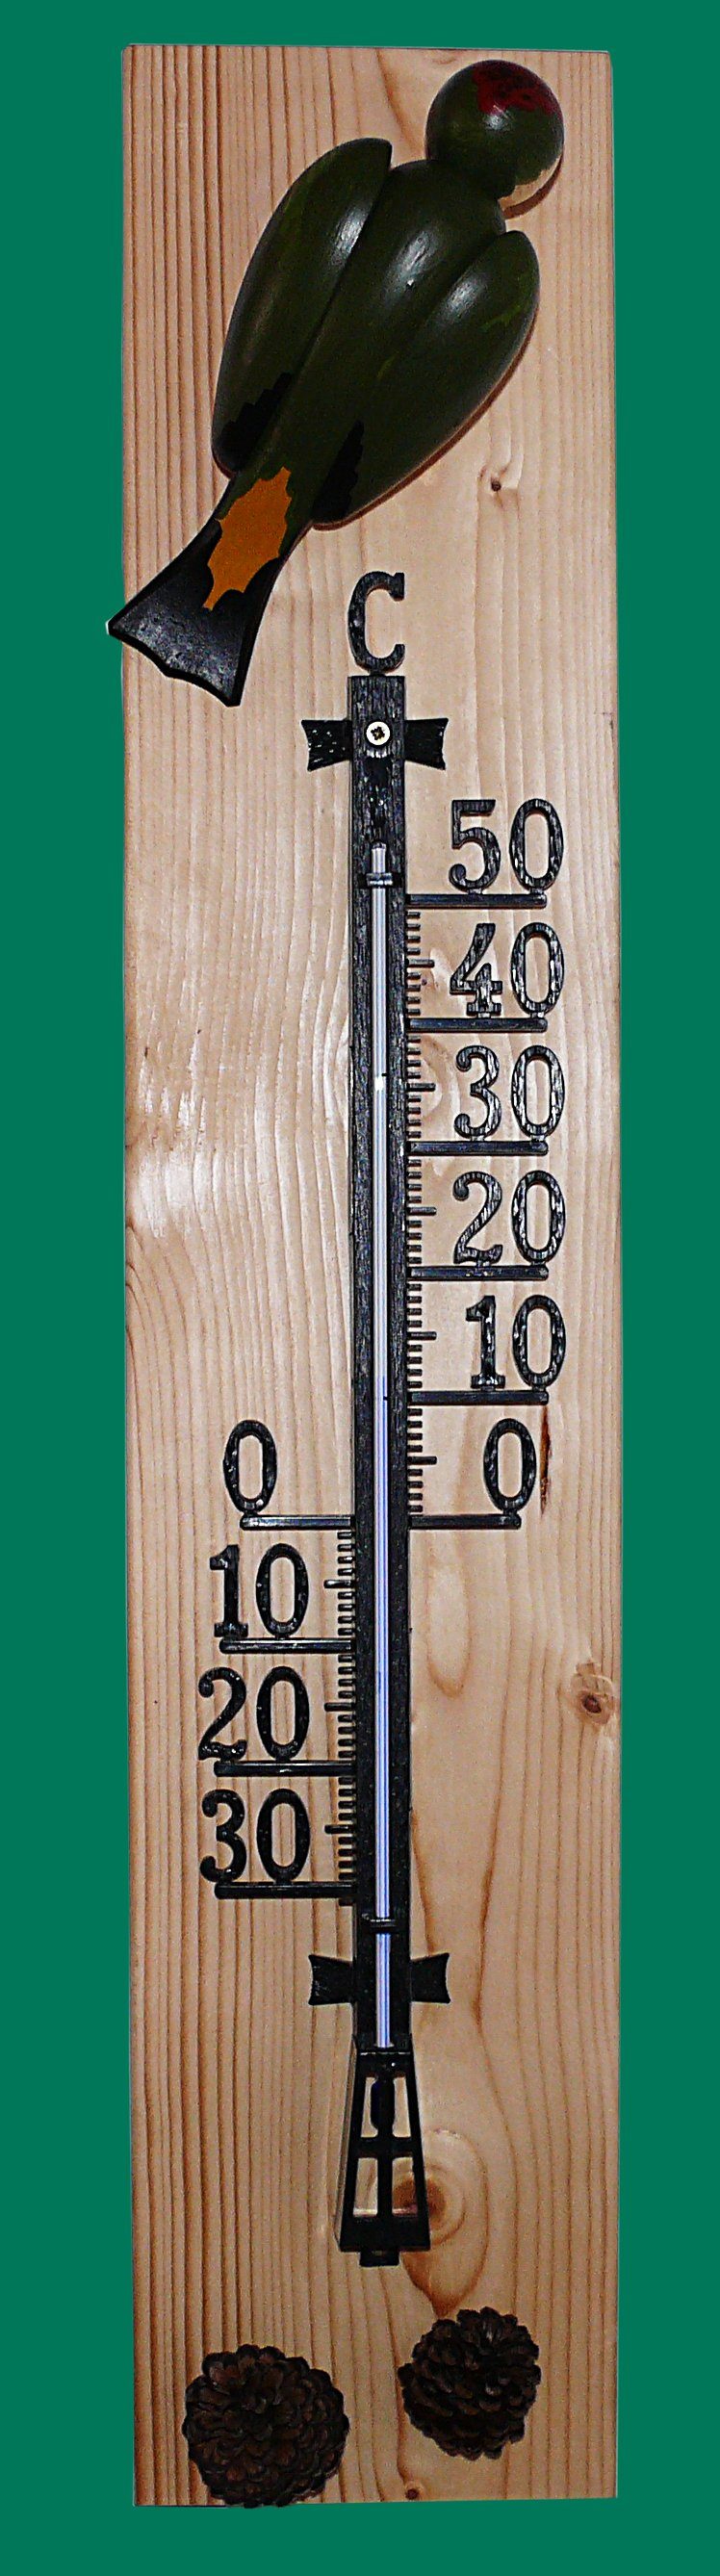 Gartenfigur Thermometer Buntspecht 72cm NEU